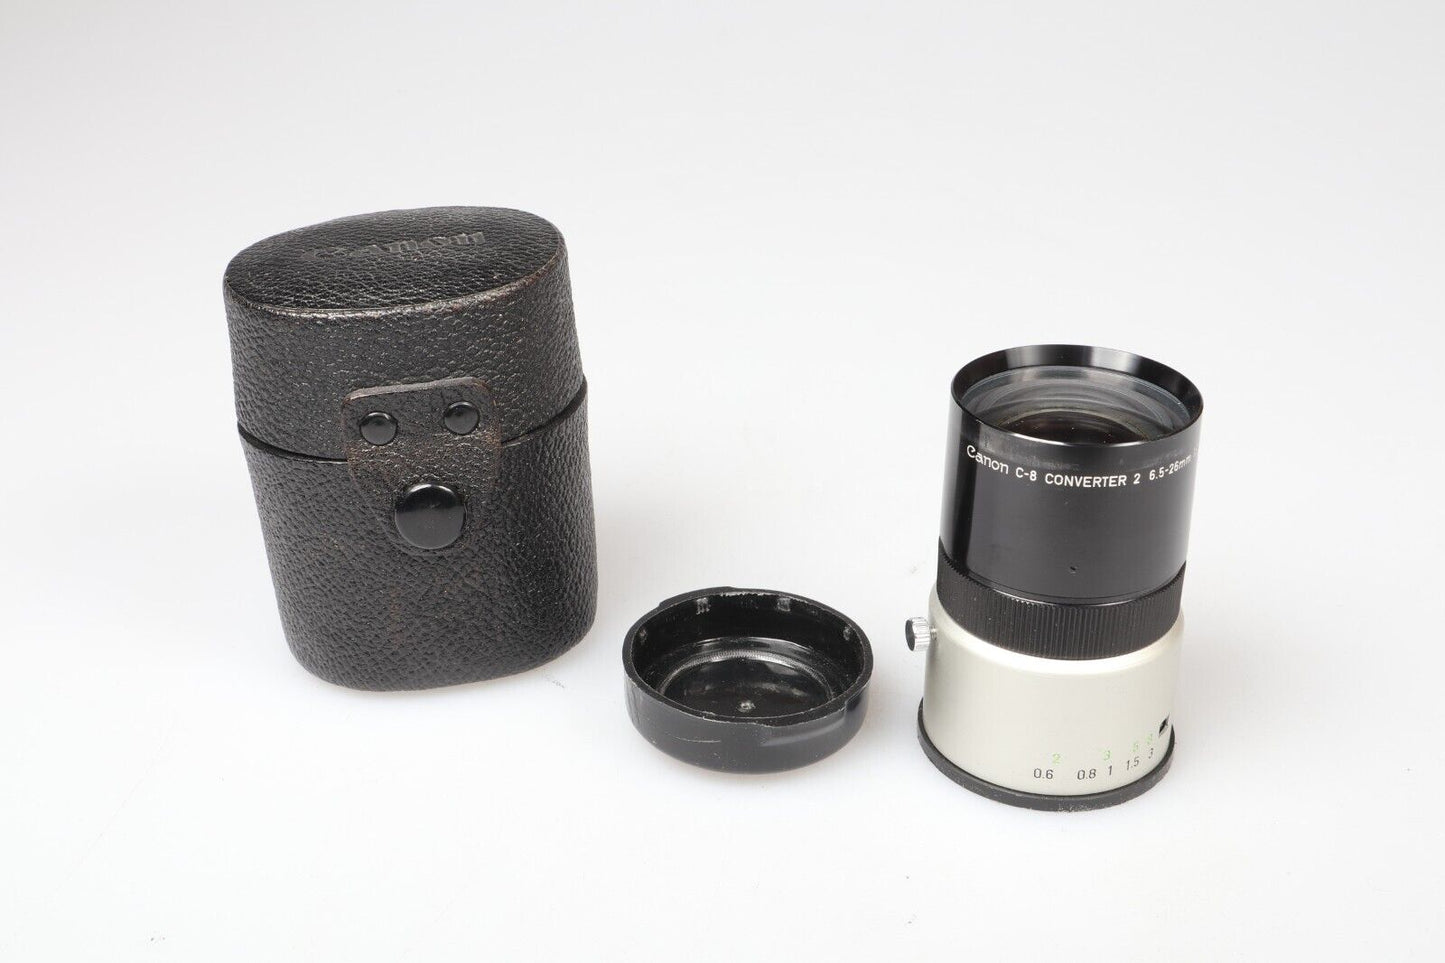 Canon C-8 Converter 2 | 6.5-26mm 1:1.7 | Canon EOS Mount